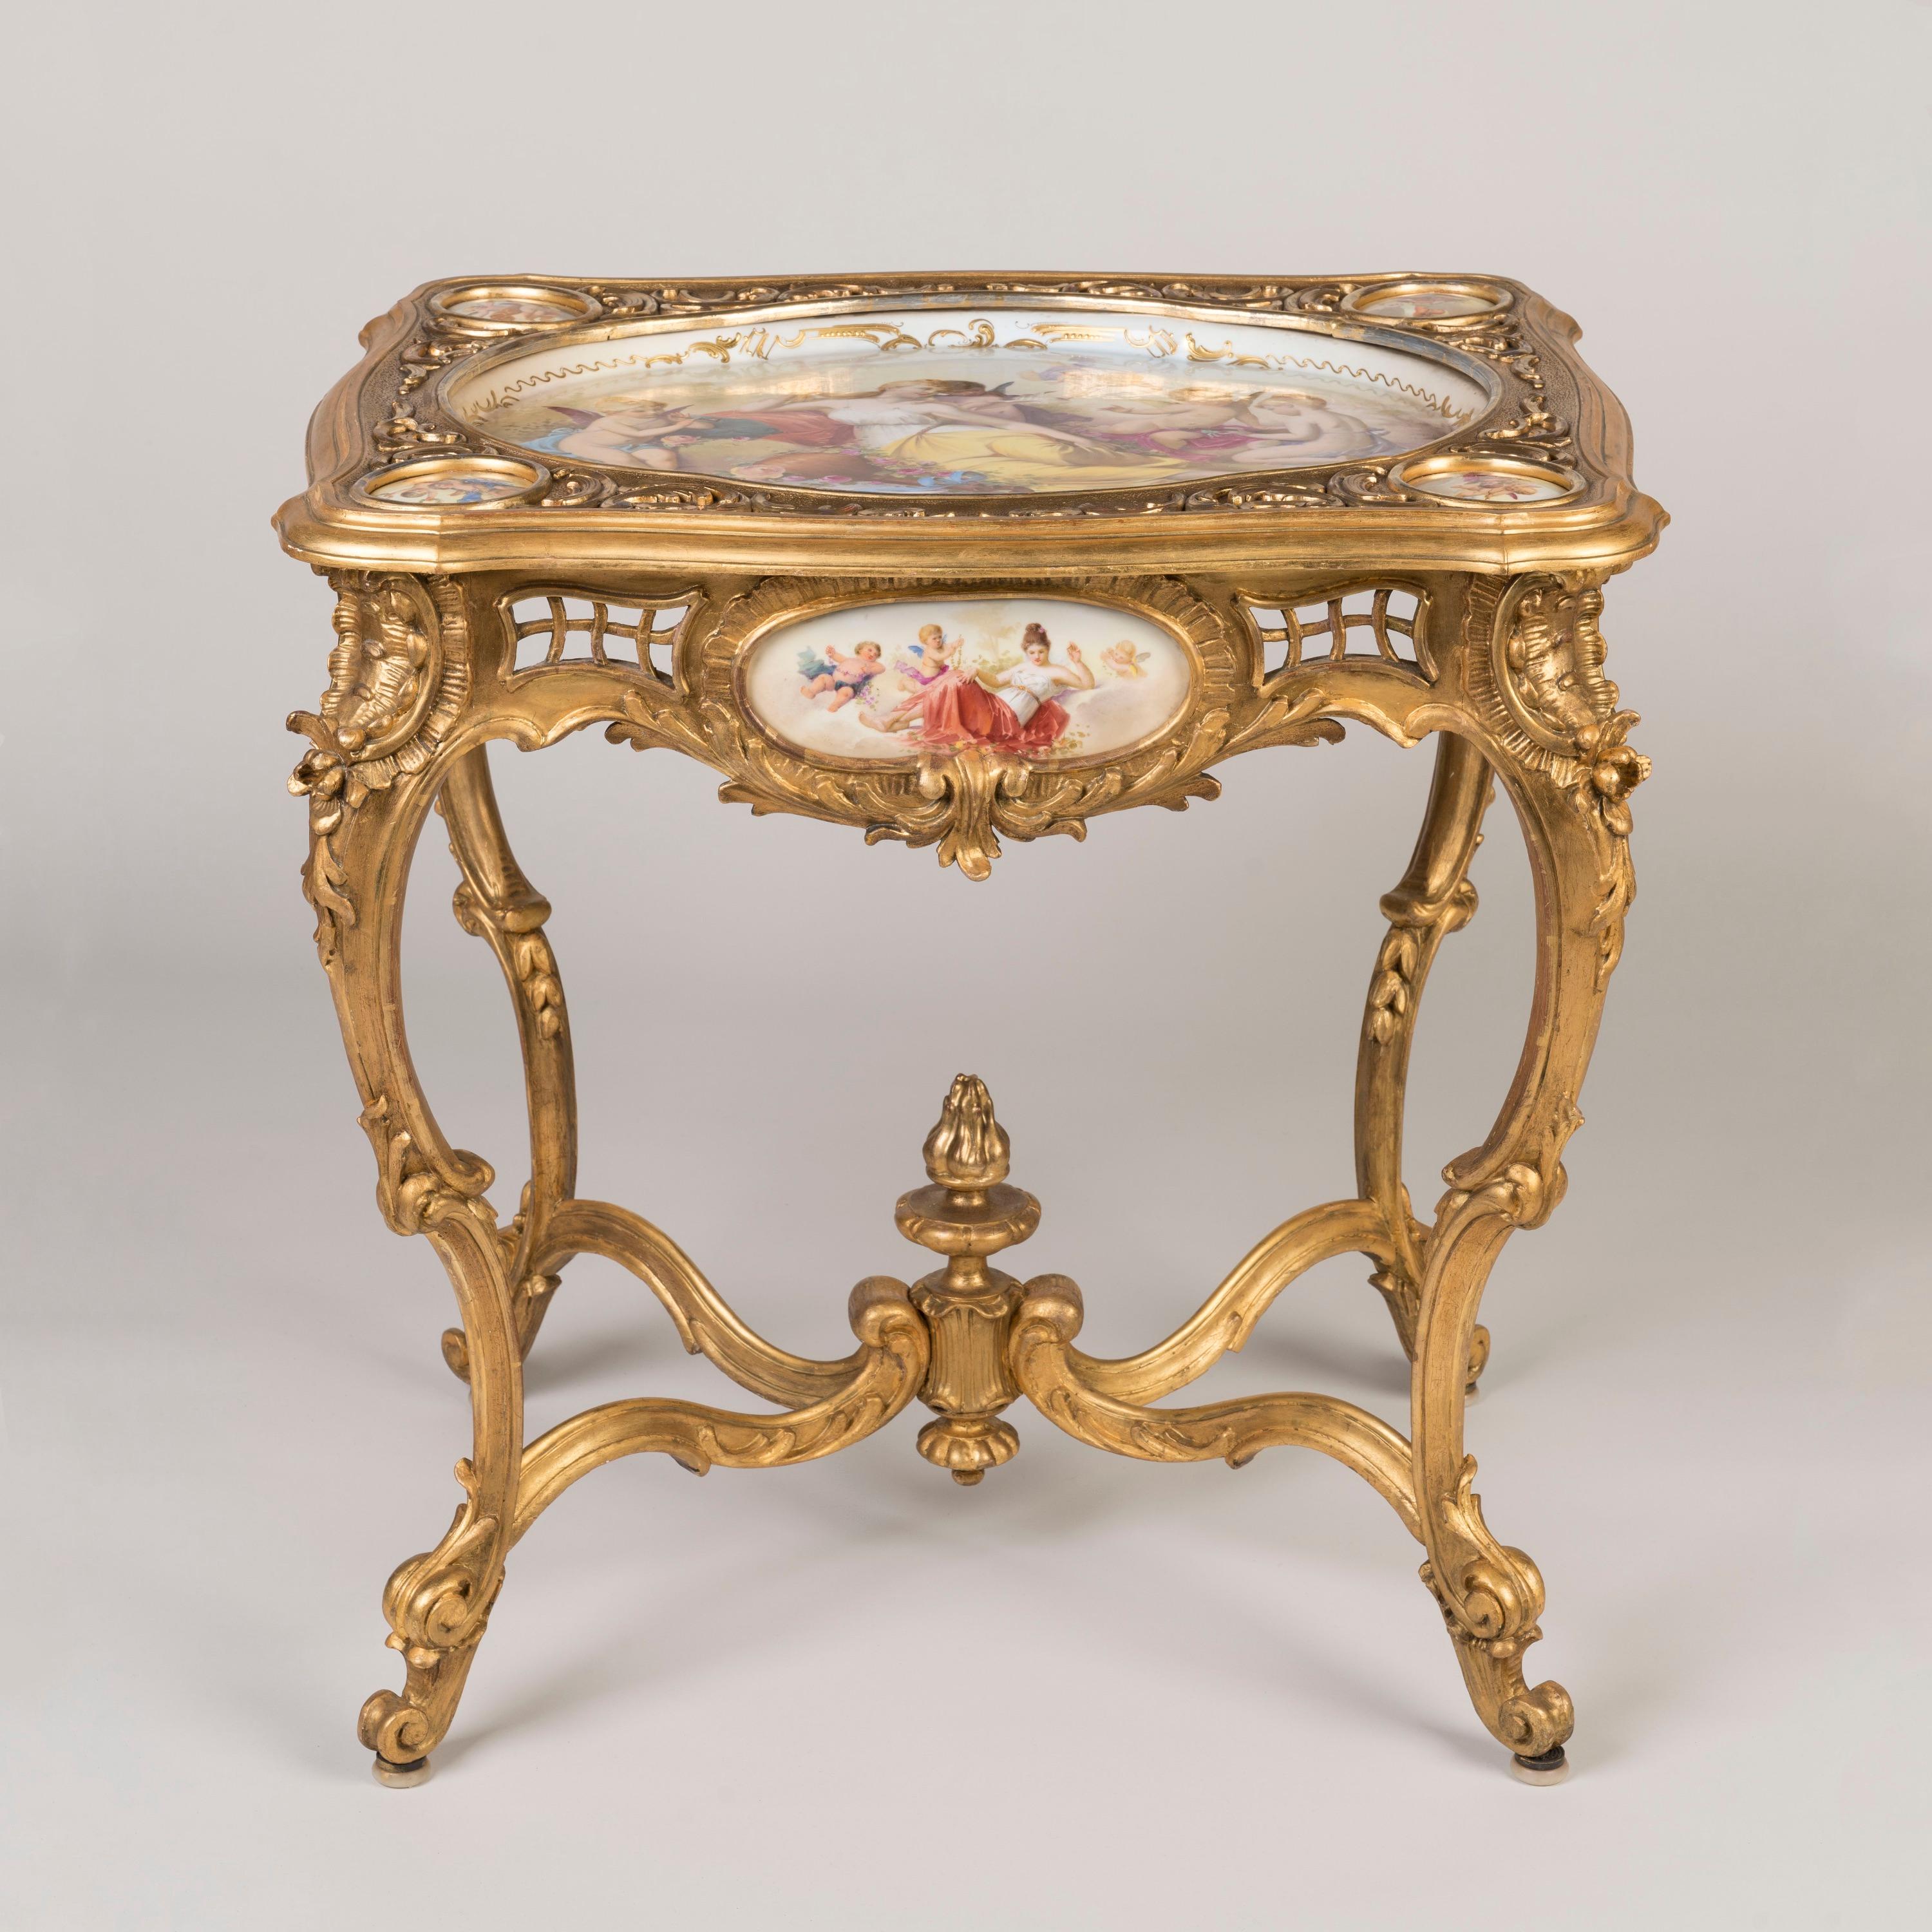 Belle et rare table sculptée en bois doré de style Louis XV
Monté avec des panneaux de porcelaine peints à la main

D'une élégante conception rococo avec une pléthore de courbes en volutes, supportée par des pieds cabriole et des pieds en volutes